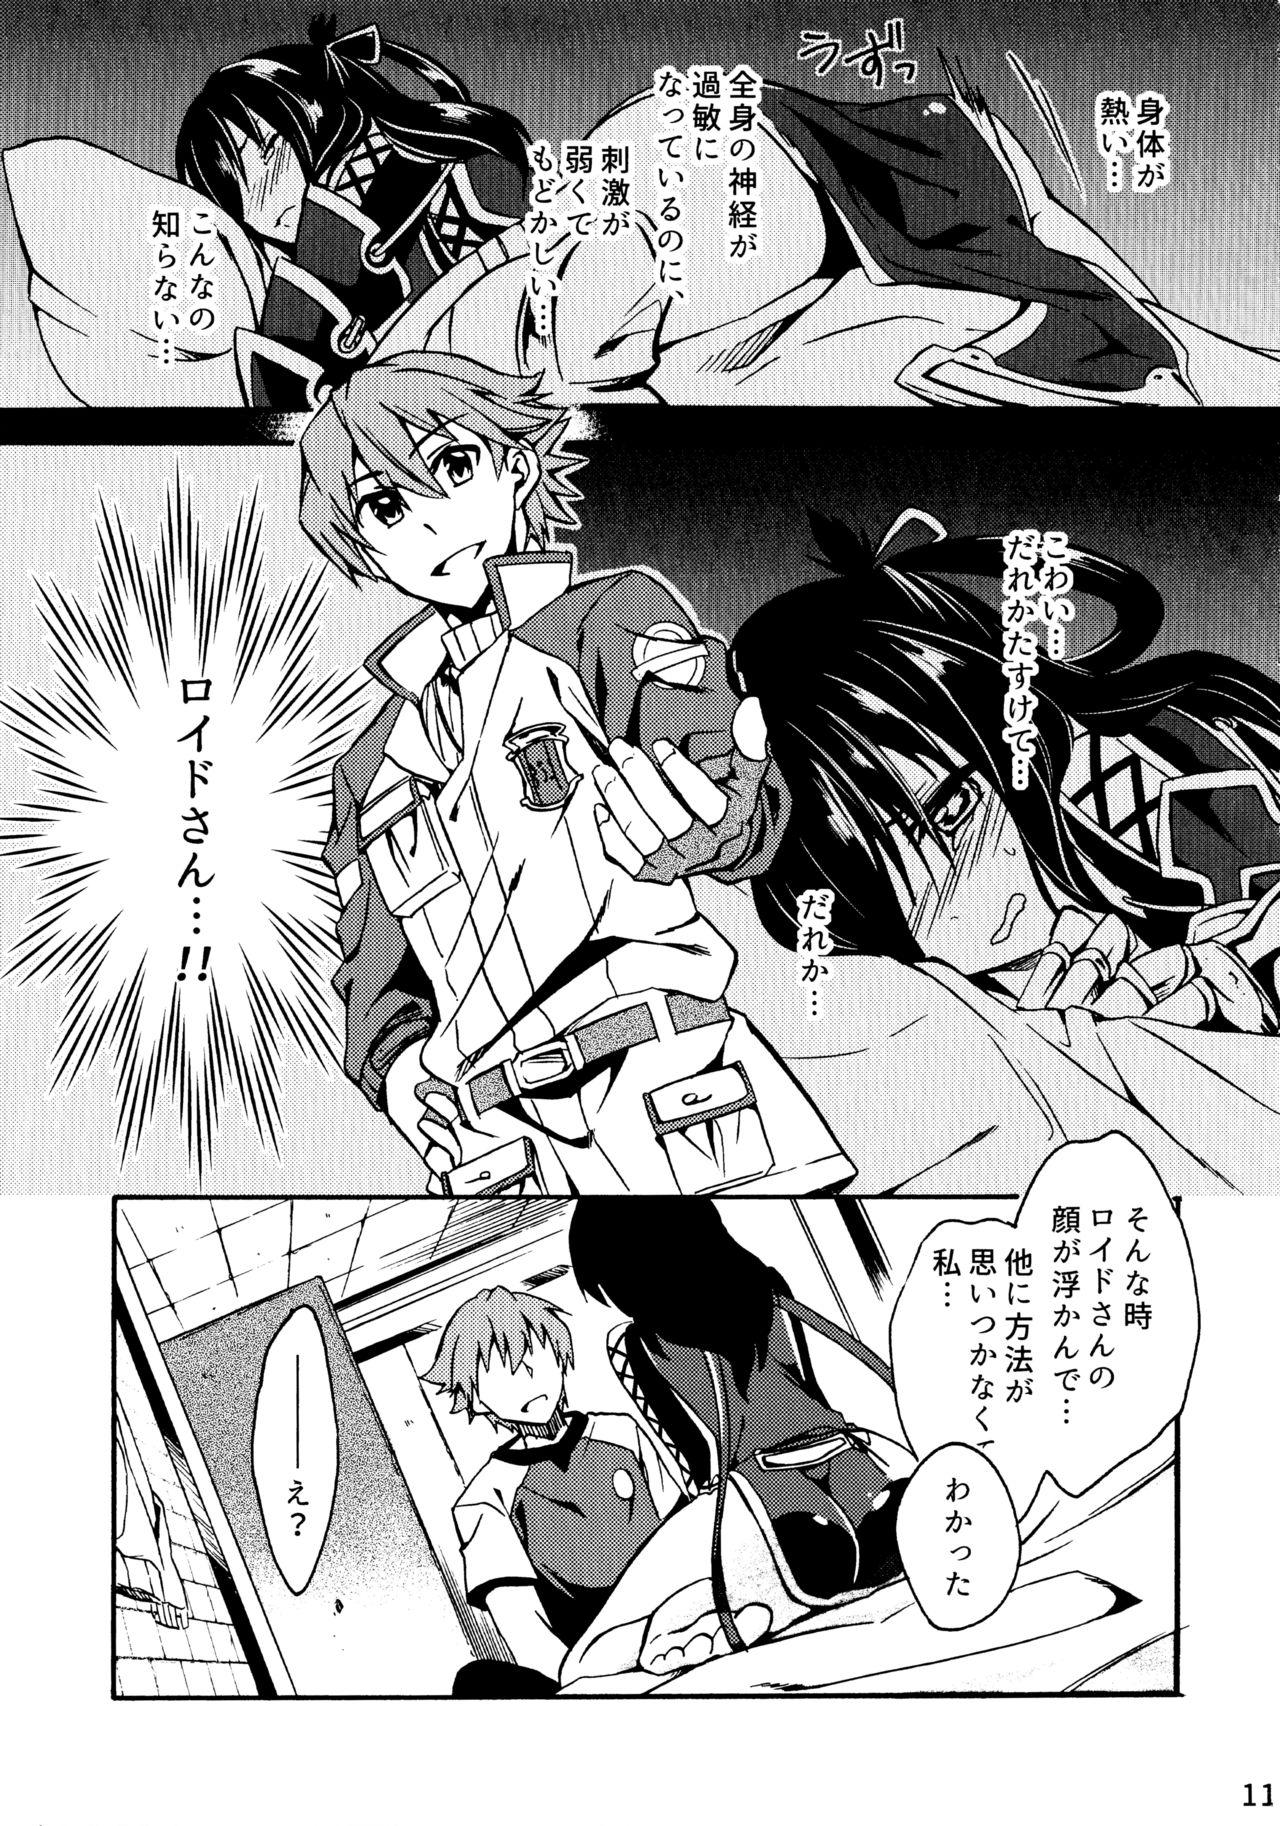 Bisex Tsukiakari no Yoru - The legend of heroes Older - Page 11